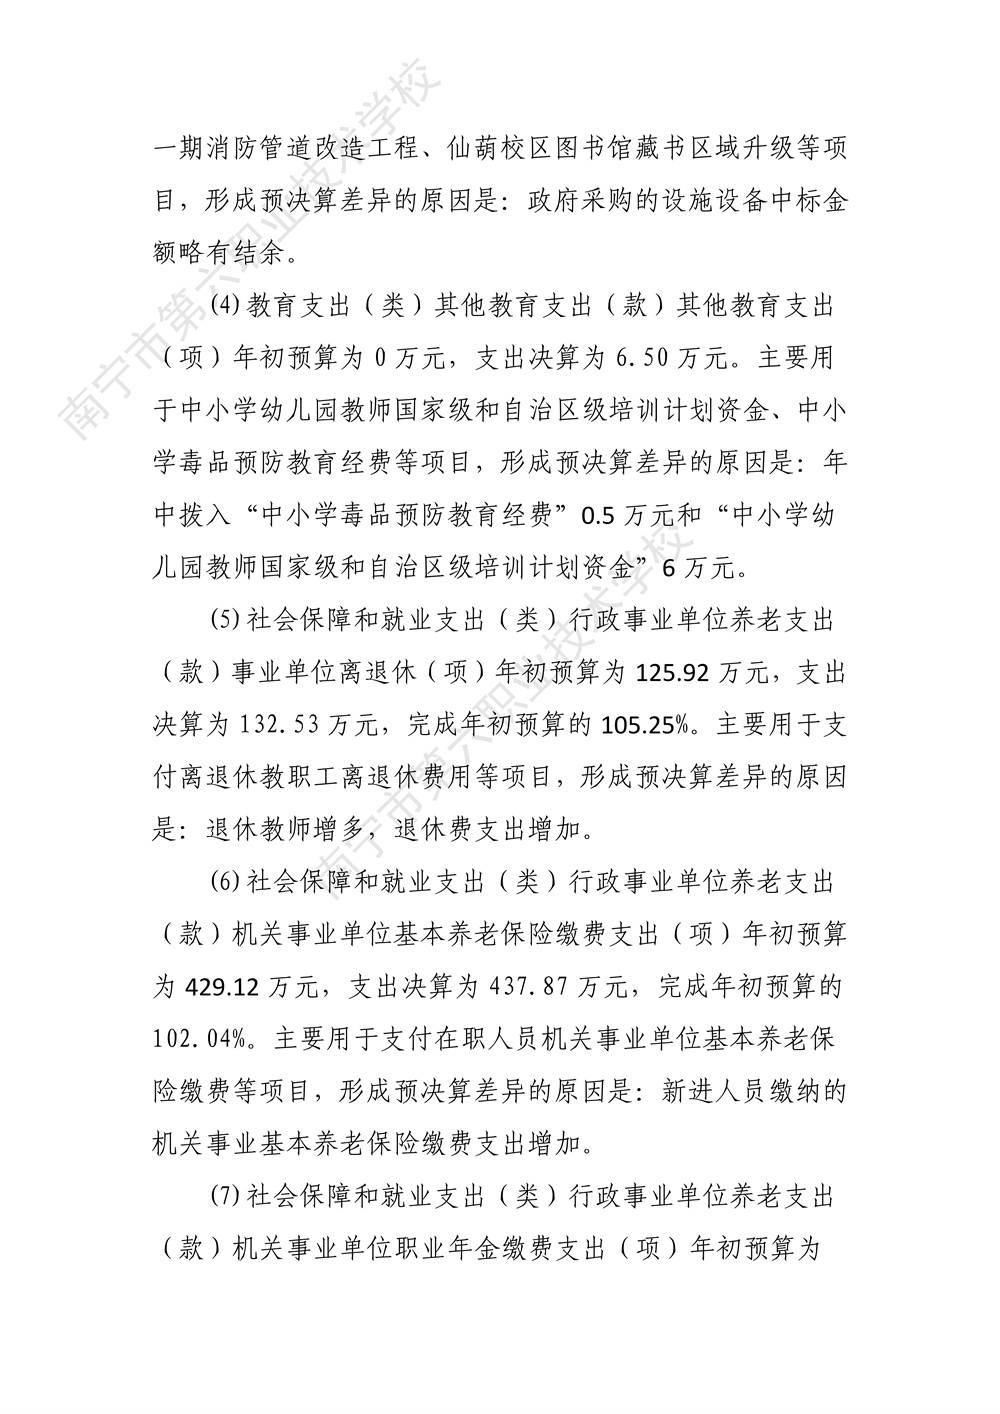 南宁市第六职业技术学校2022年度部门决算公开（终版）_28.jpg